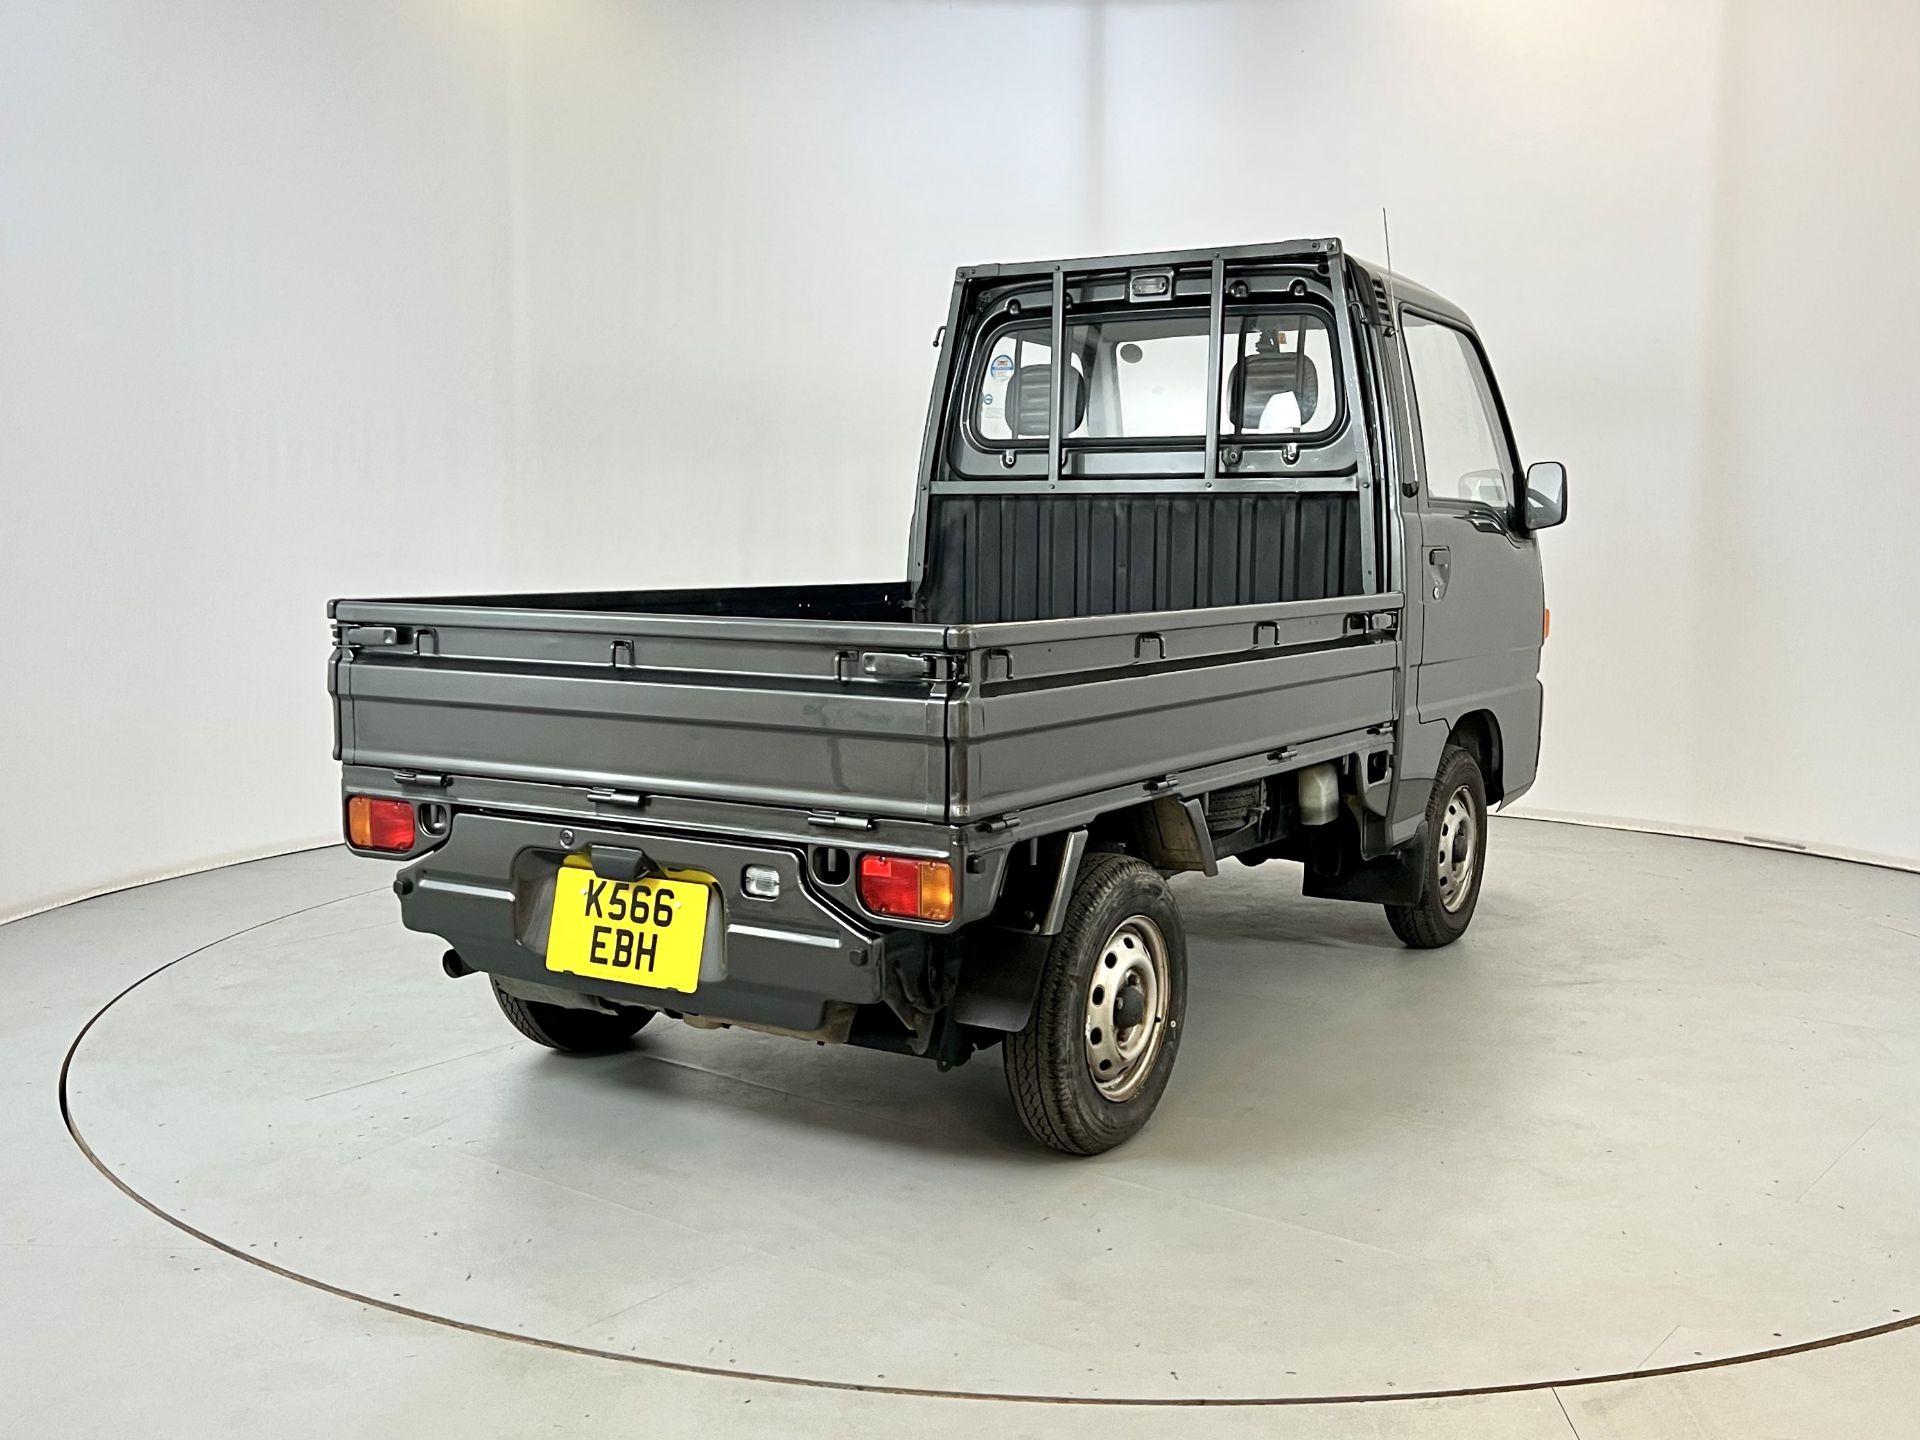 Subaru Sambar - Image 9 of 27